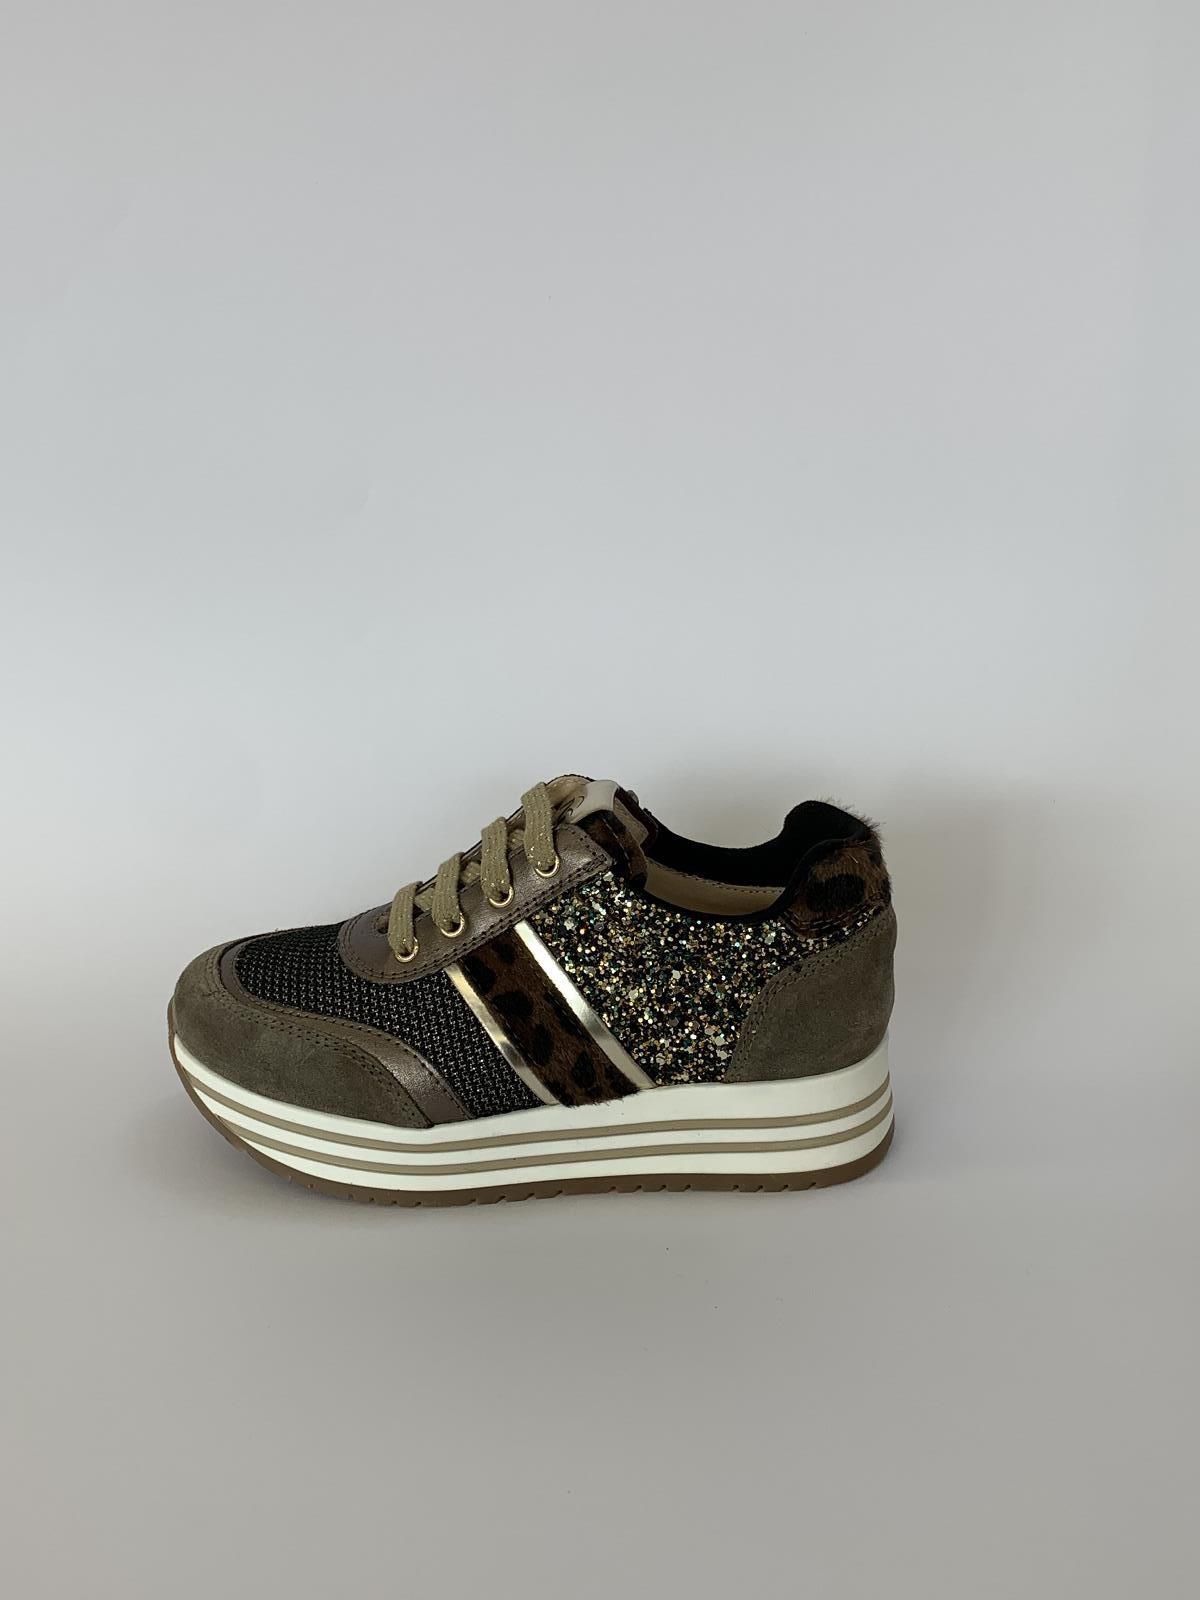 Nero Giardini Sneaker Taupe meisjes (Runner Rits Leopard - 27020) - Schoenen Luca